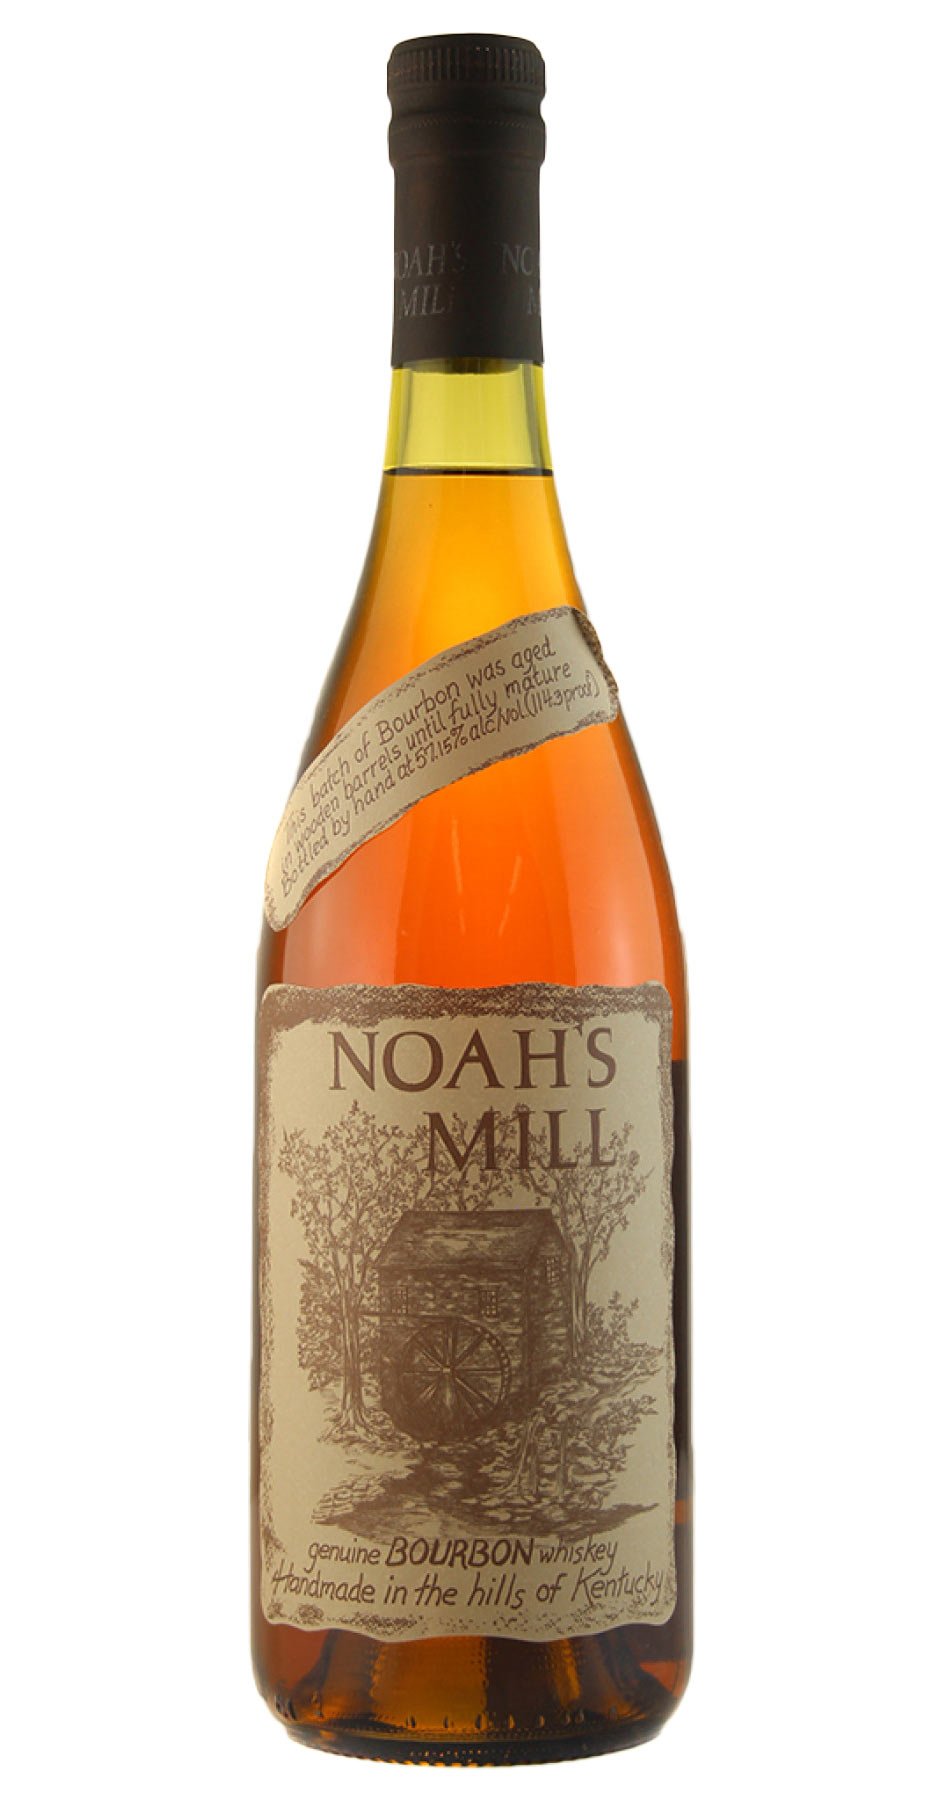 Noahs Mill Small Batch Kentucky Bourbon Whiskey